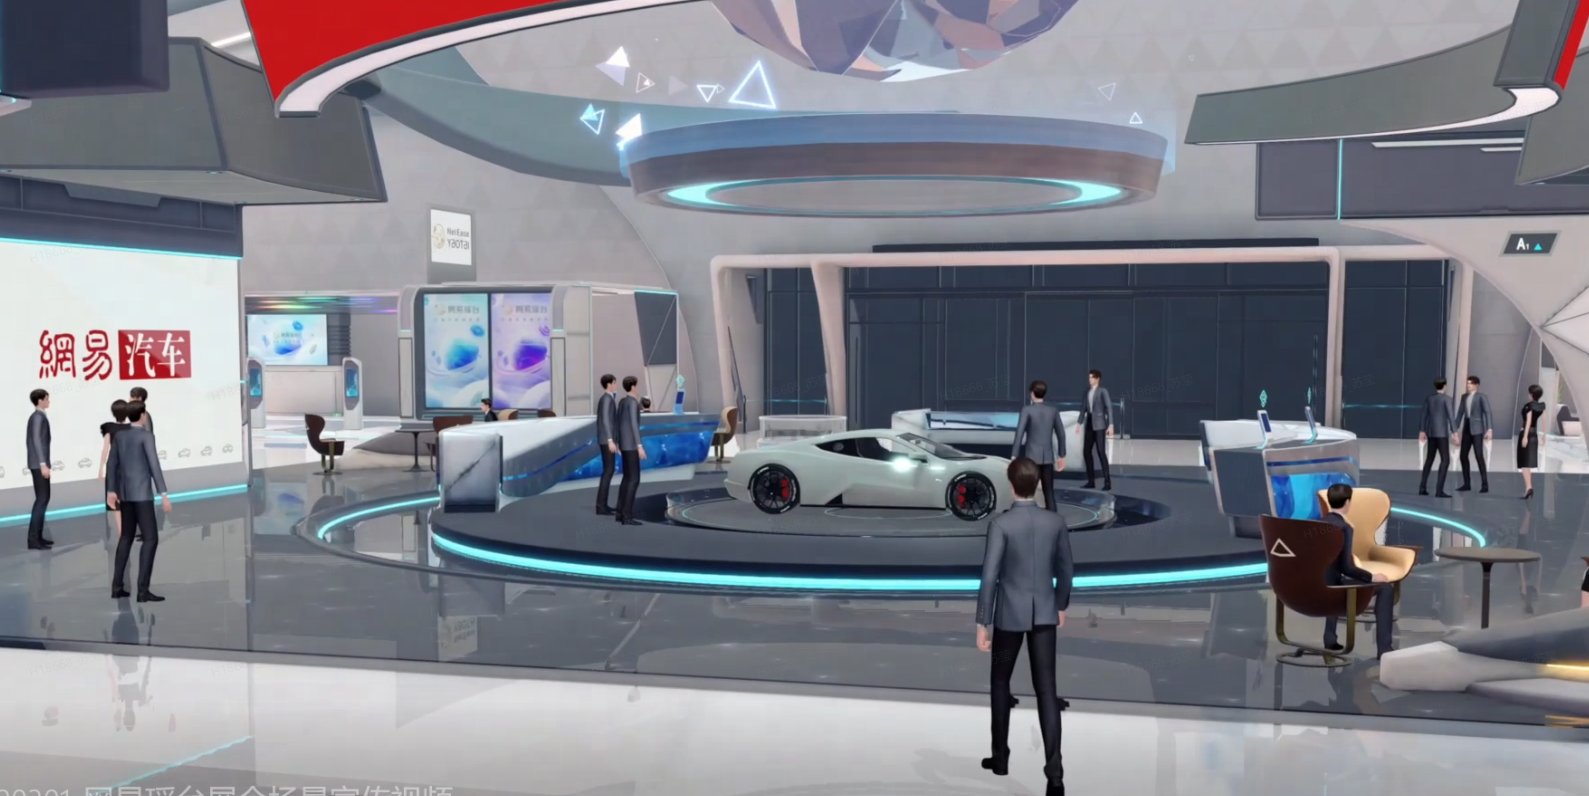 这是一张展示会场的图片，中心有一辆白色的概念汽车，周围站着一些参观者和工作人员，环境现代科技感强。